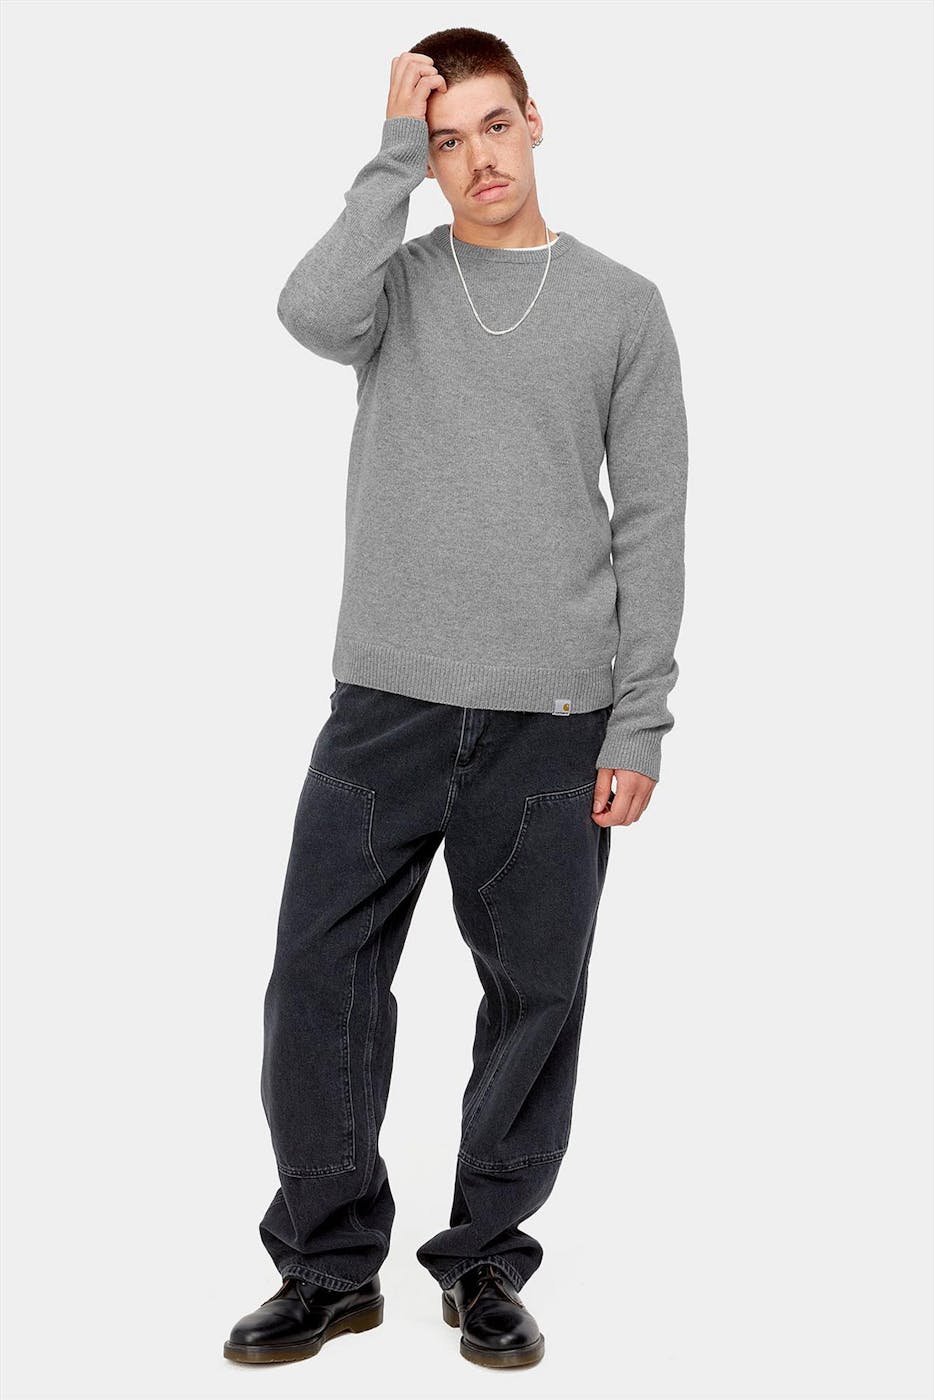 Carhartt WIP - Grijze Allen sweater